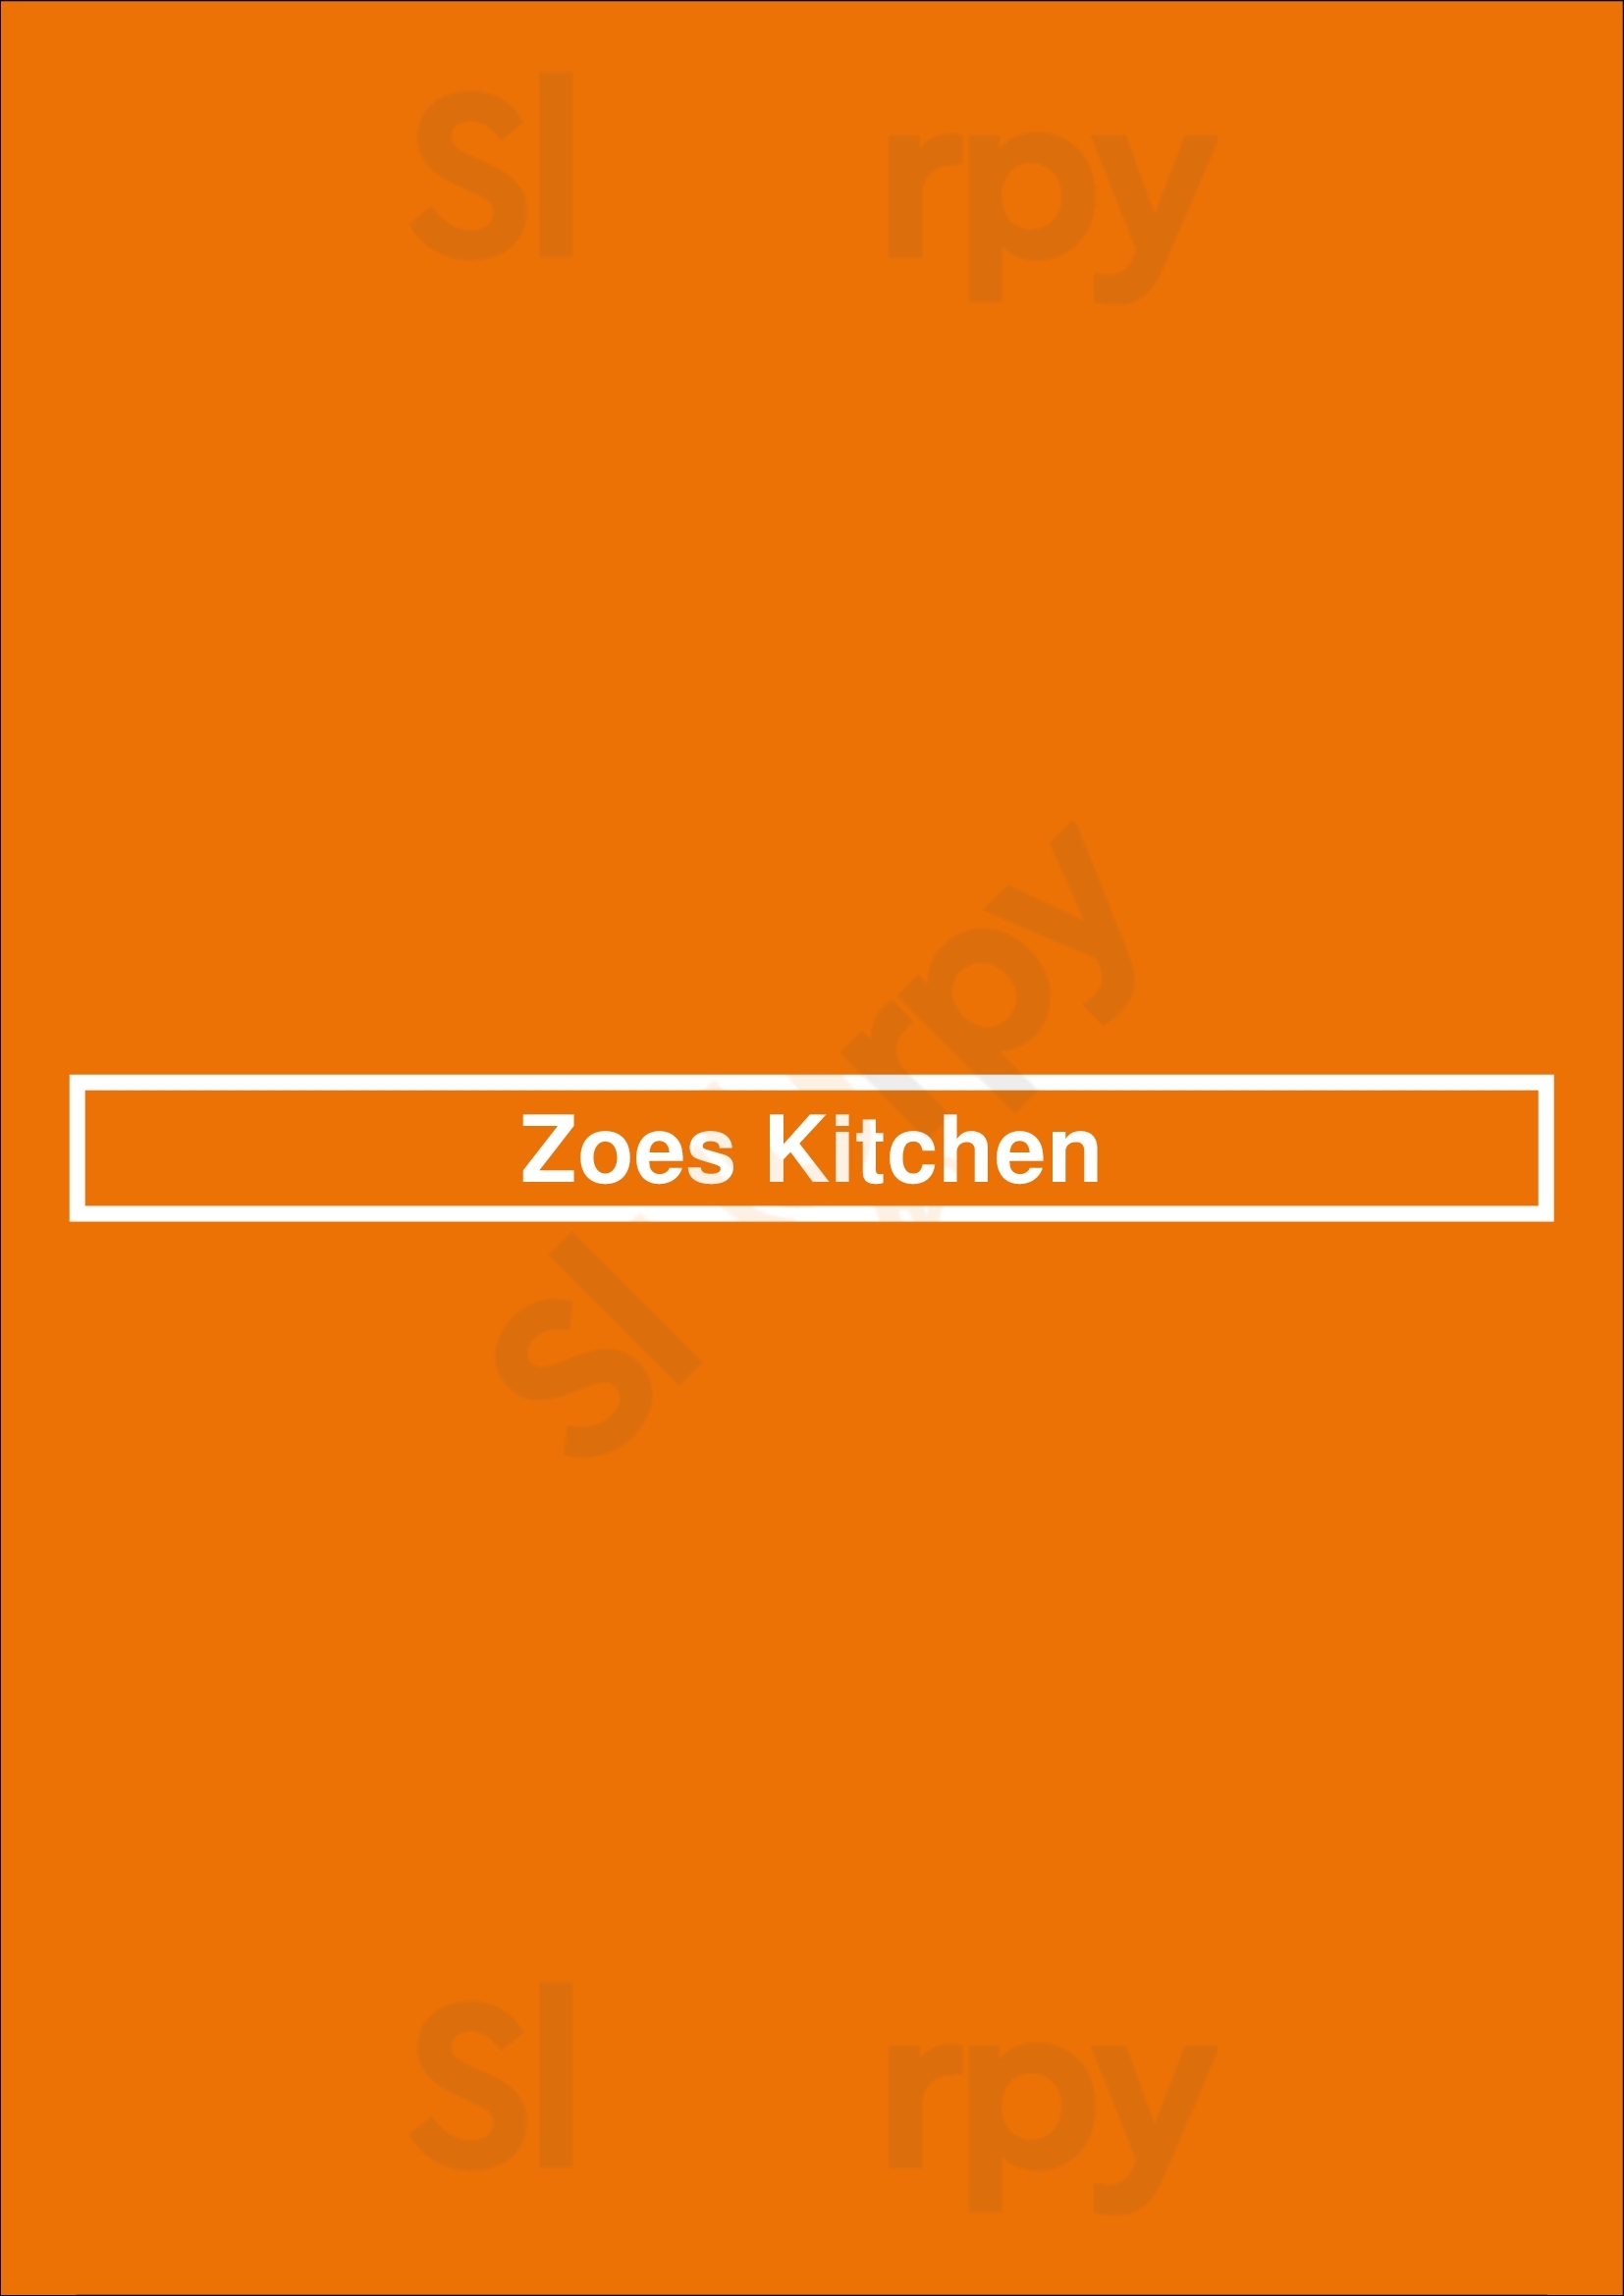 Zoes Kitchen Scottsdale Menu - 1